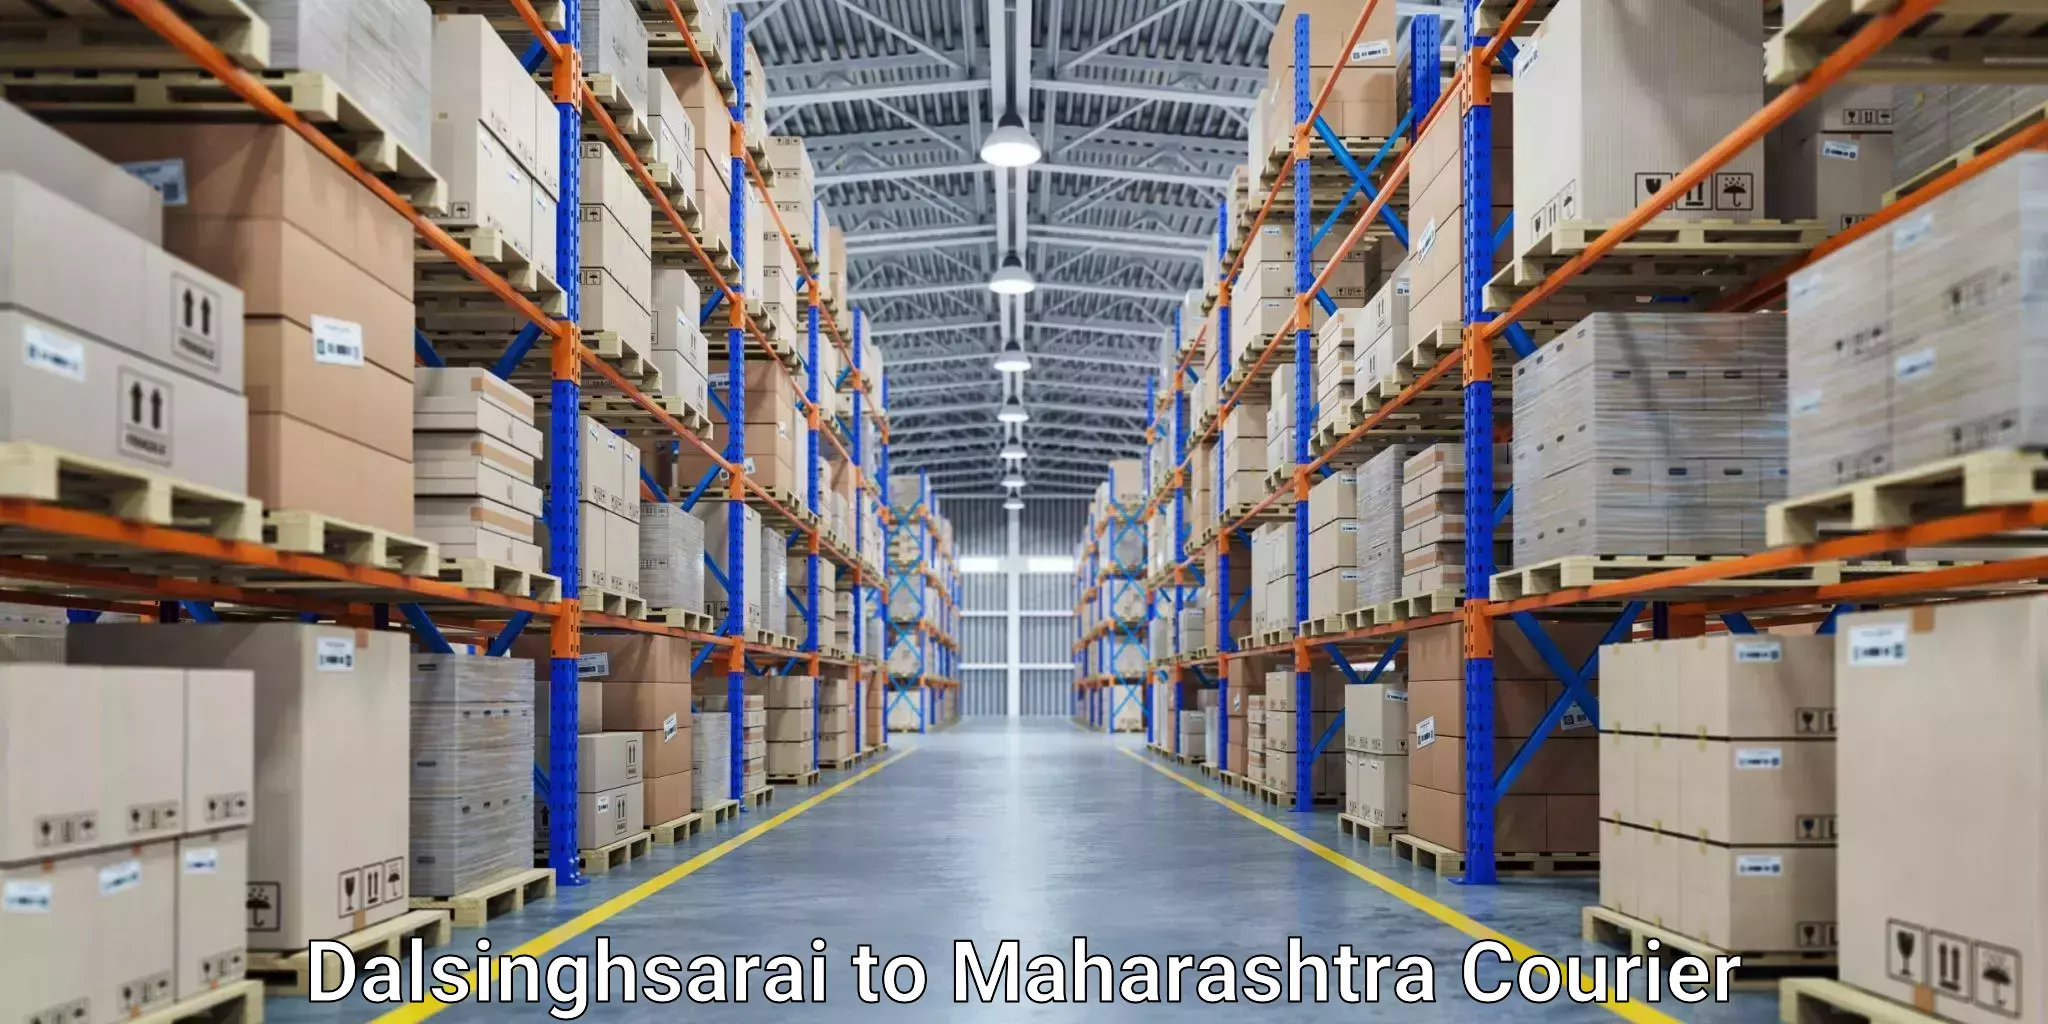 Courier app Dalsinghsarai to Maharashtra